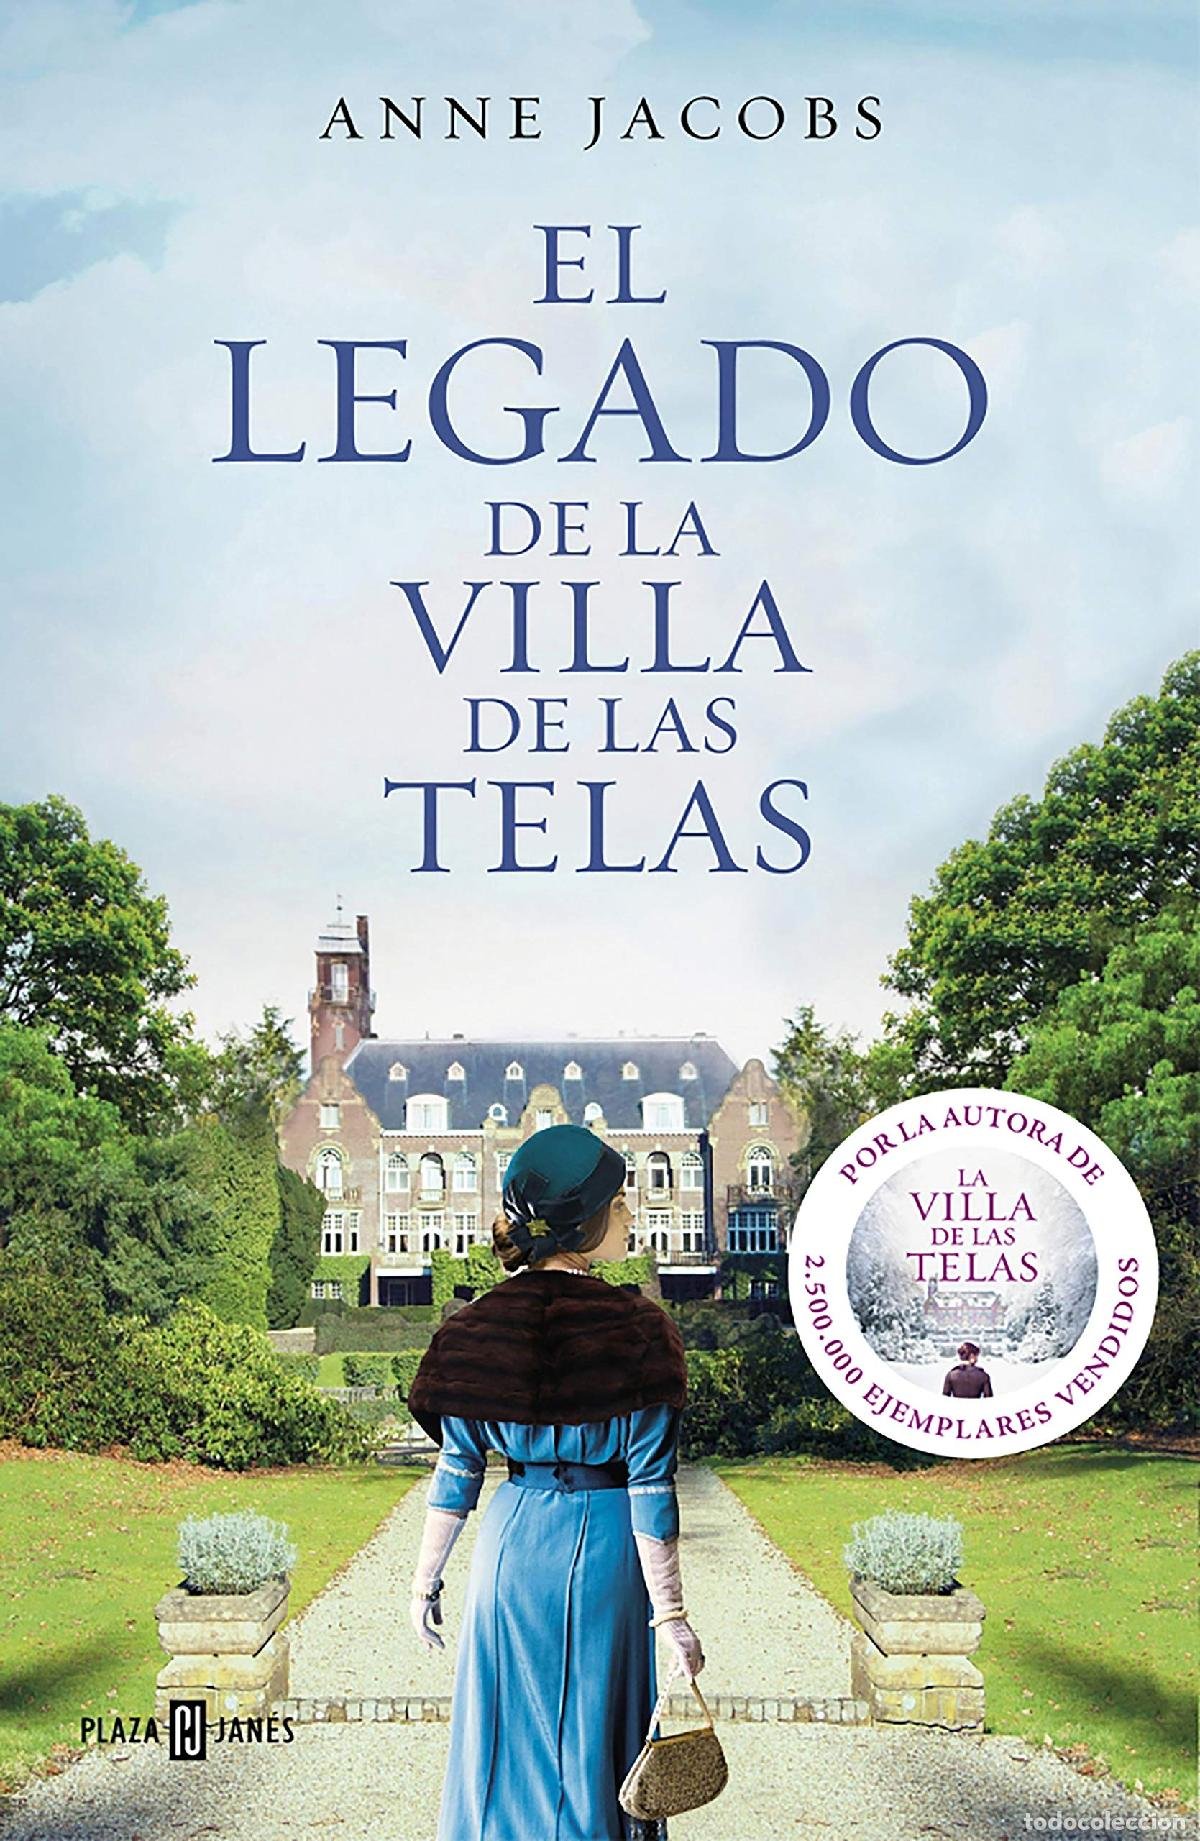 La villa de las telas / The Cloth Villa (Spanish Edition)